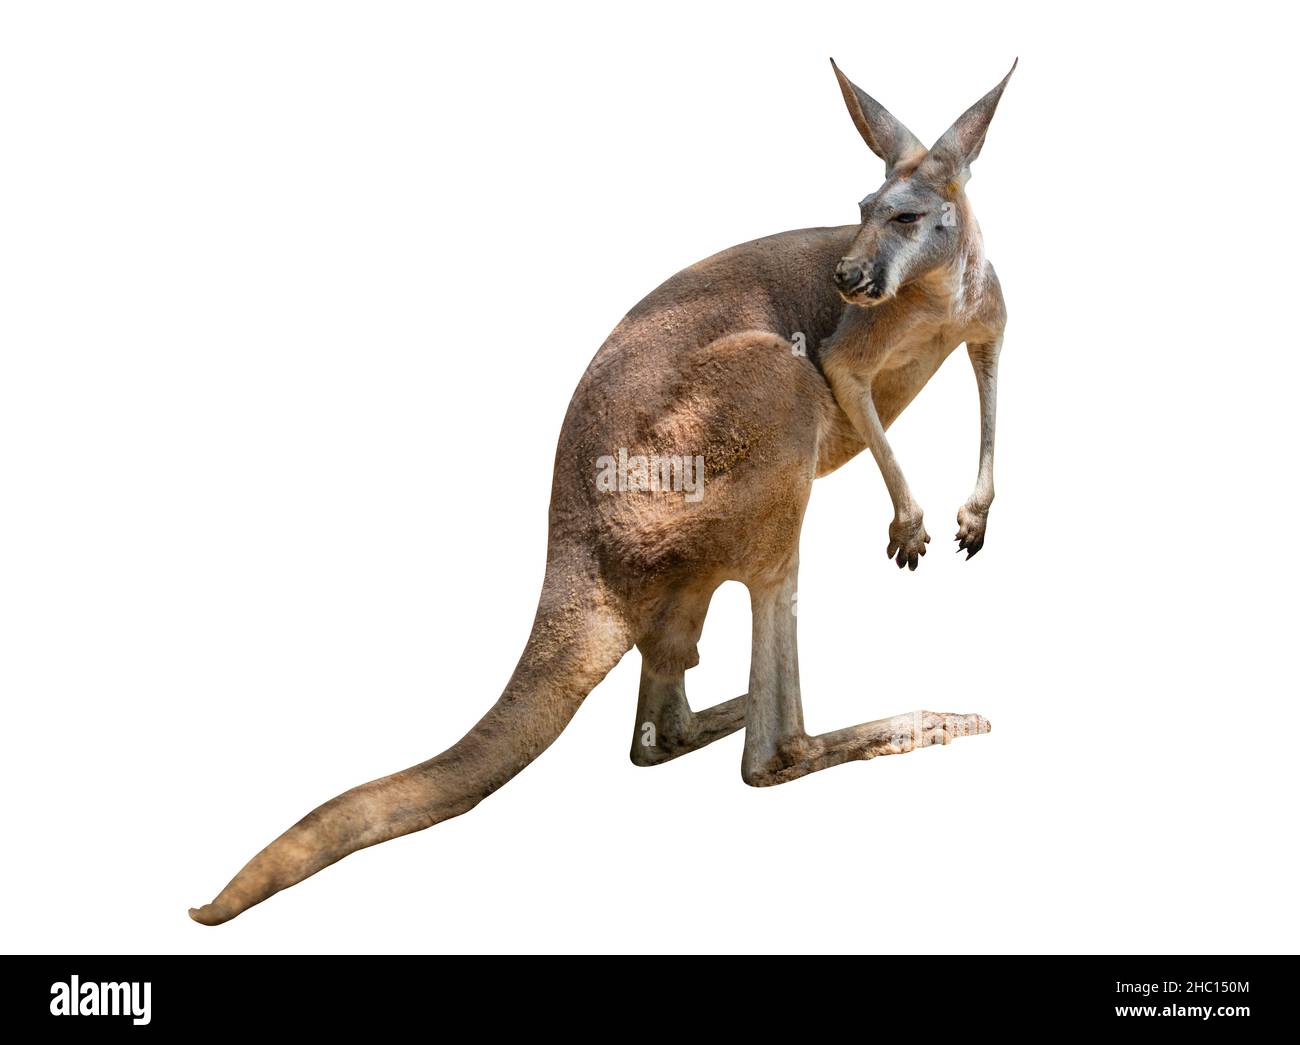 Isoliertes Känguru, Ganzkörperkänguru auf weißem Hintergrund, hat natürliches Licht und Schatten auf dem Körper von Känguru. Bild von Zootier. Stockfoto